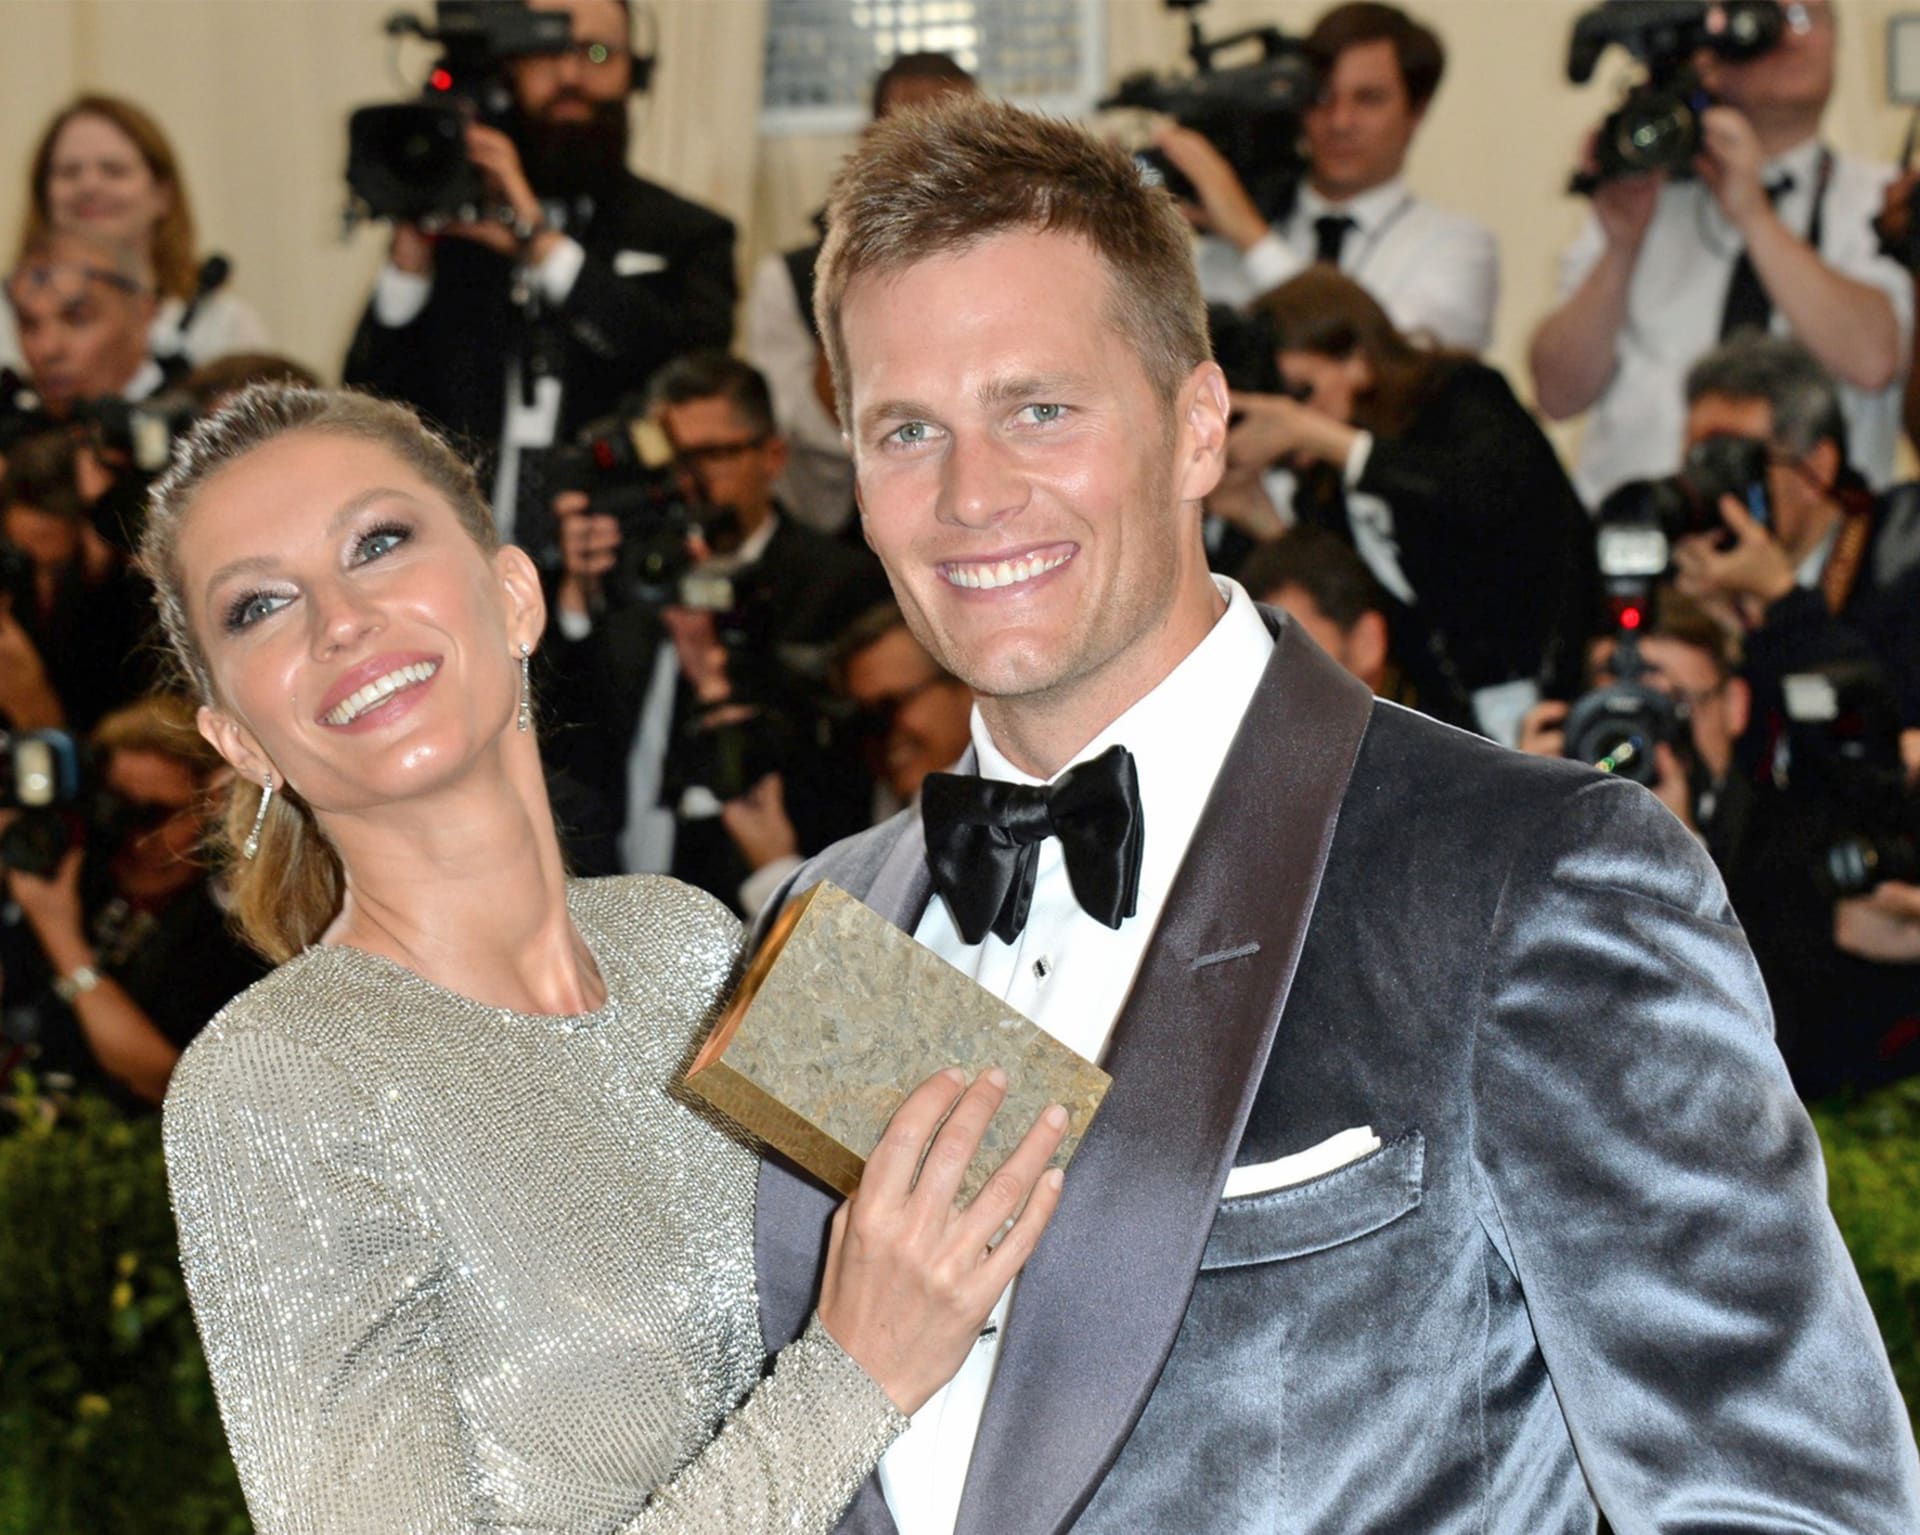 V loňském roce skončilo také manželství nejúspěšnějšího hráče amerického fotbalu Toma Bradyho a původem brazilské top modelky Gisele Bündchen.